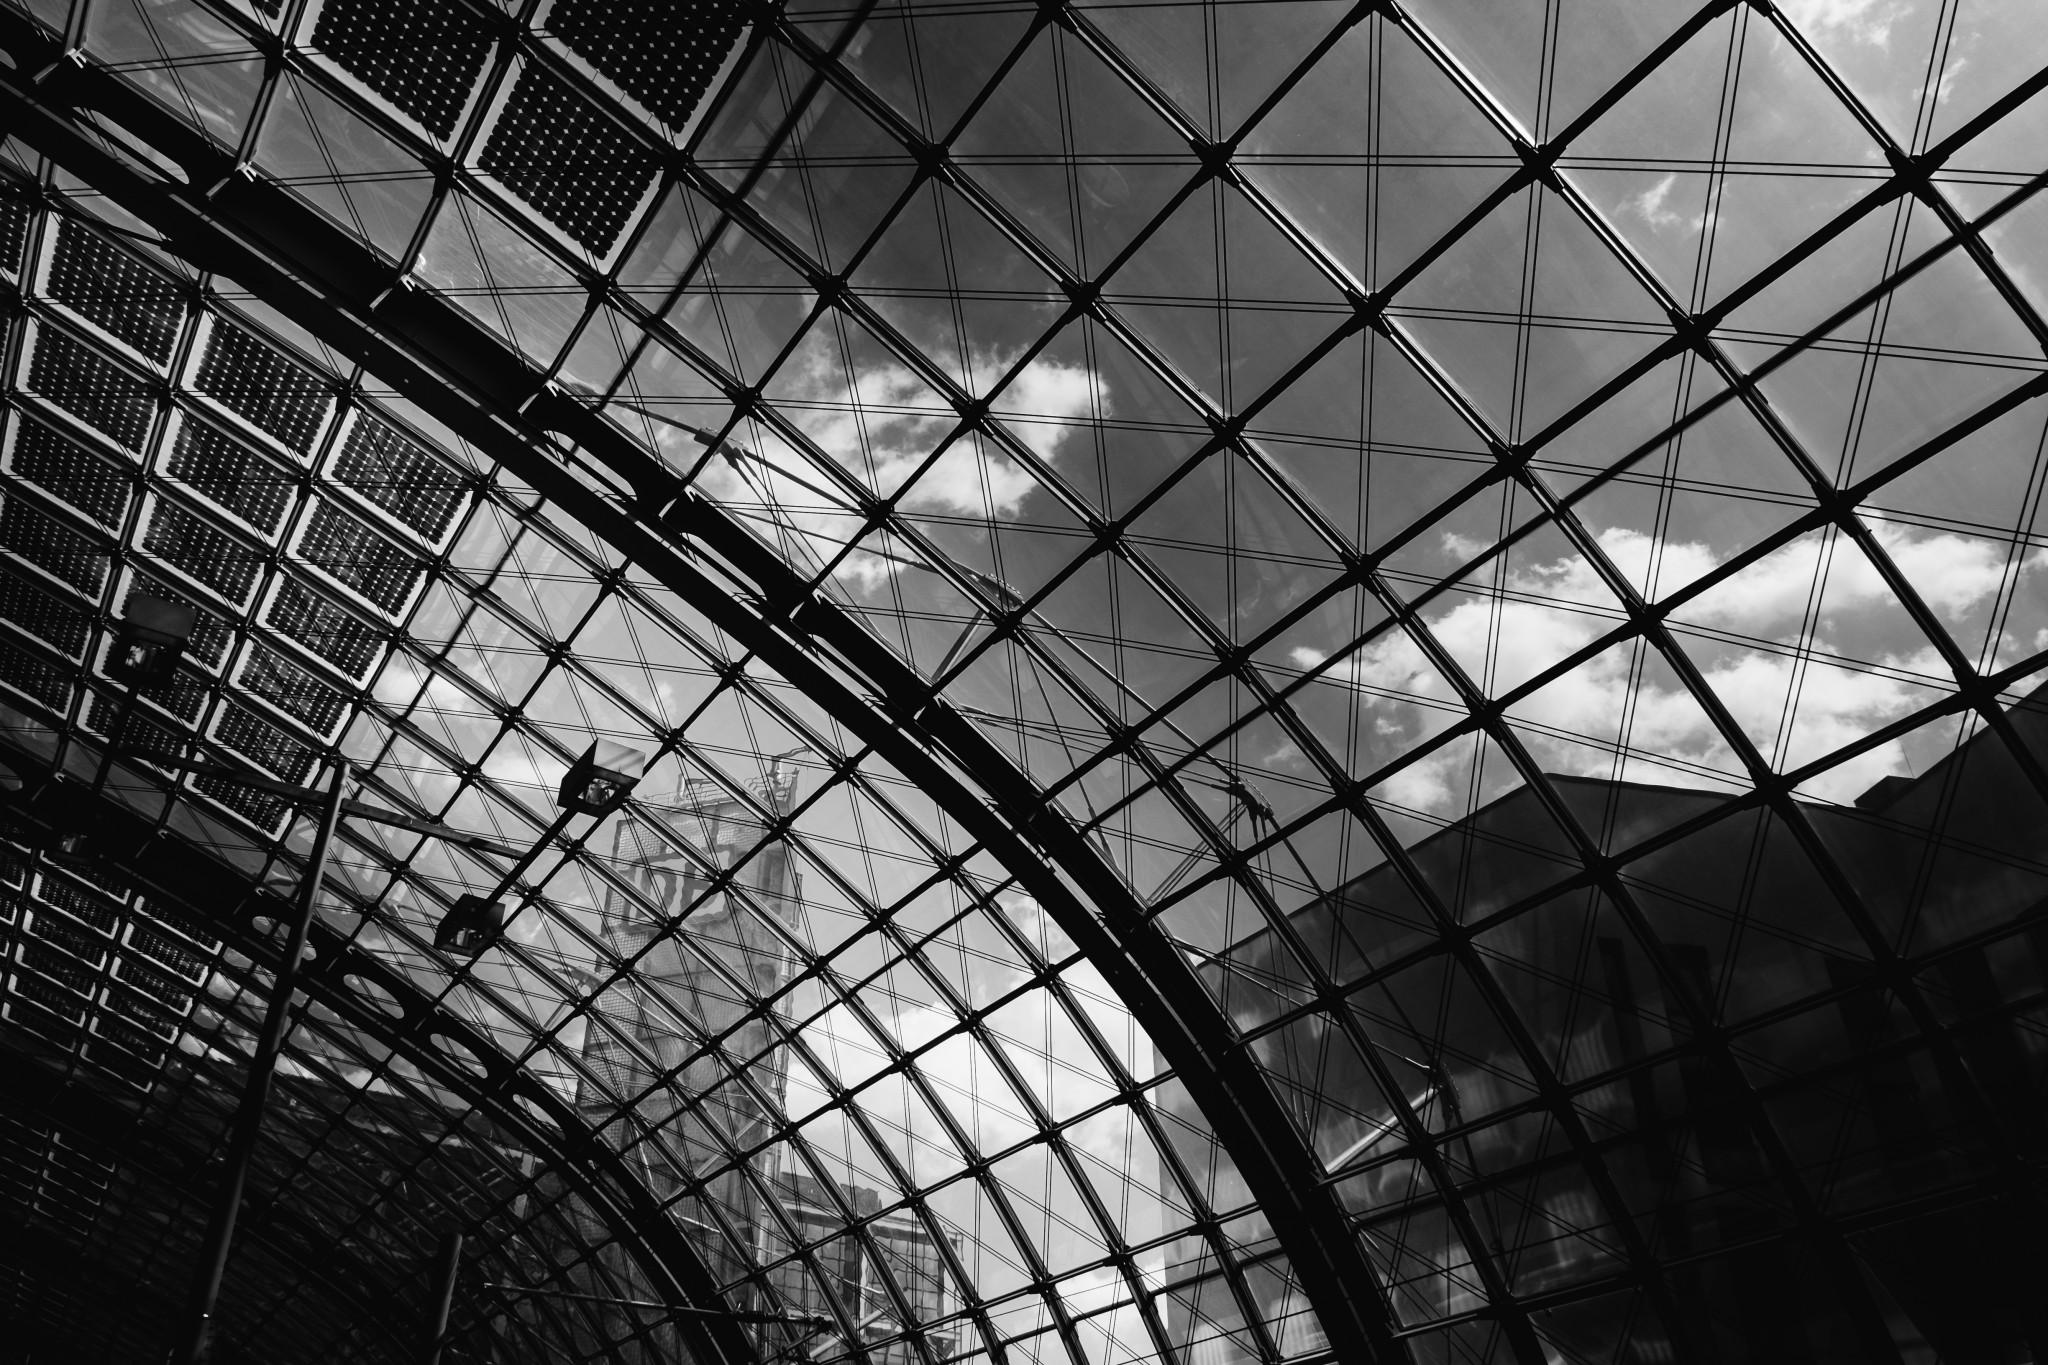 Architektur, Berlin Hauptbahnhof in Schwarz-Weiß